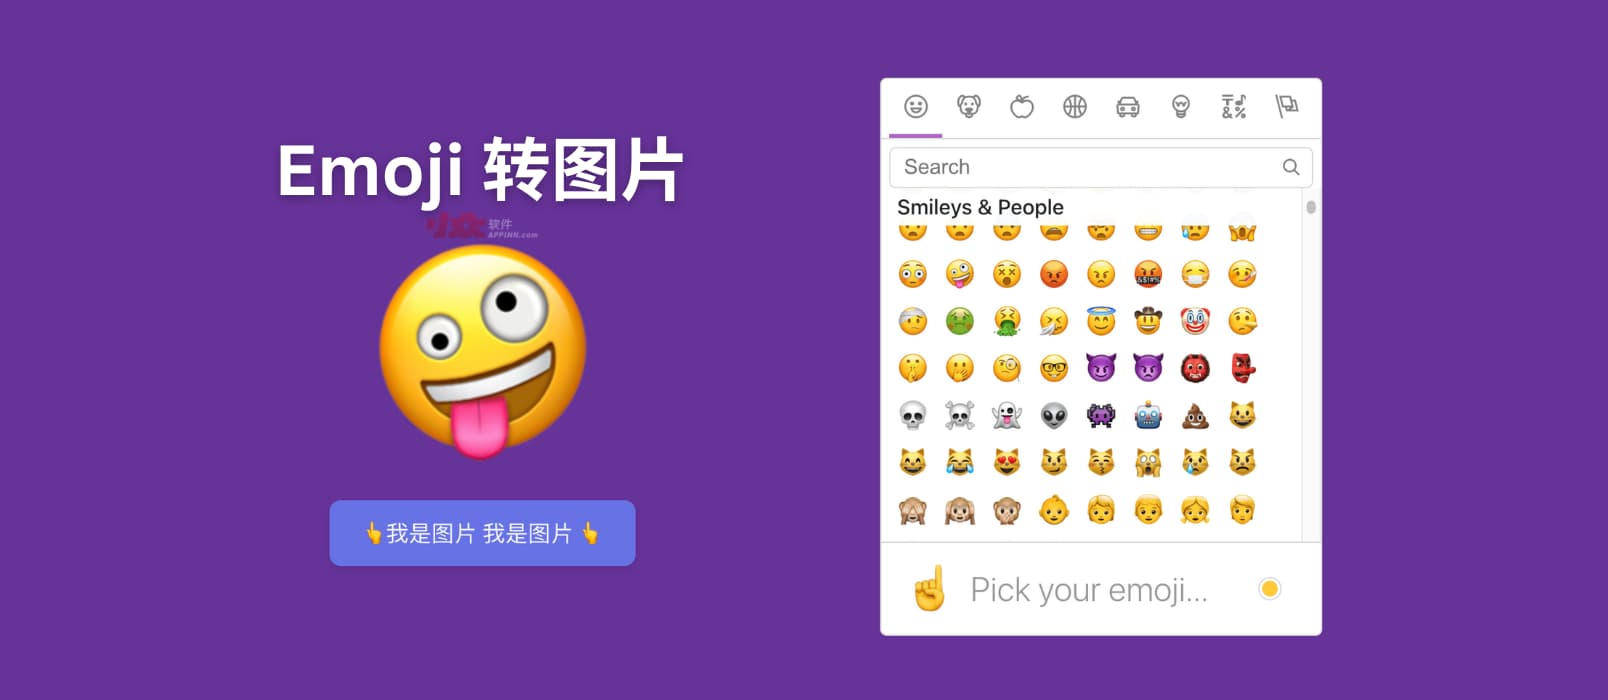 推荐工具Emoji to image - Emoji 表情快速转png图片